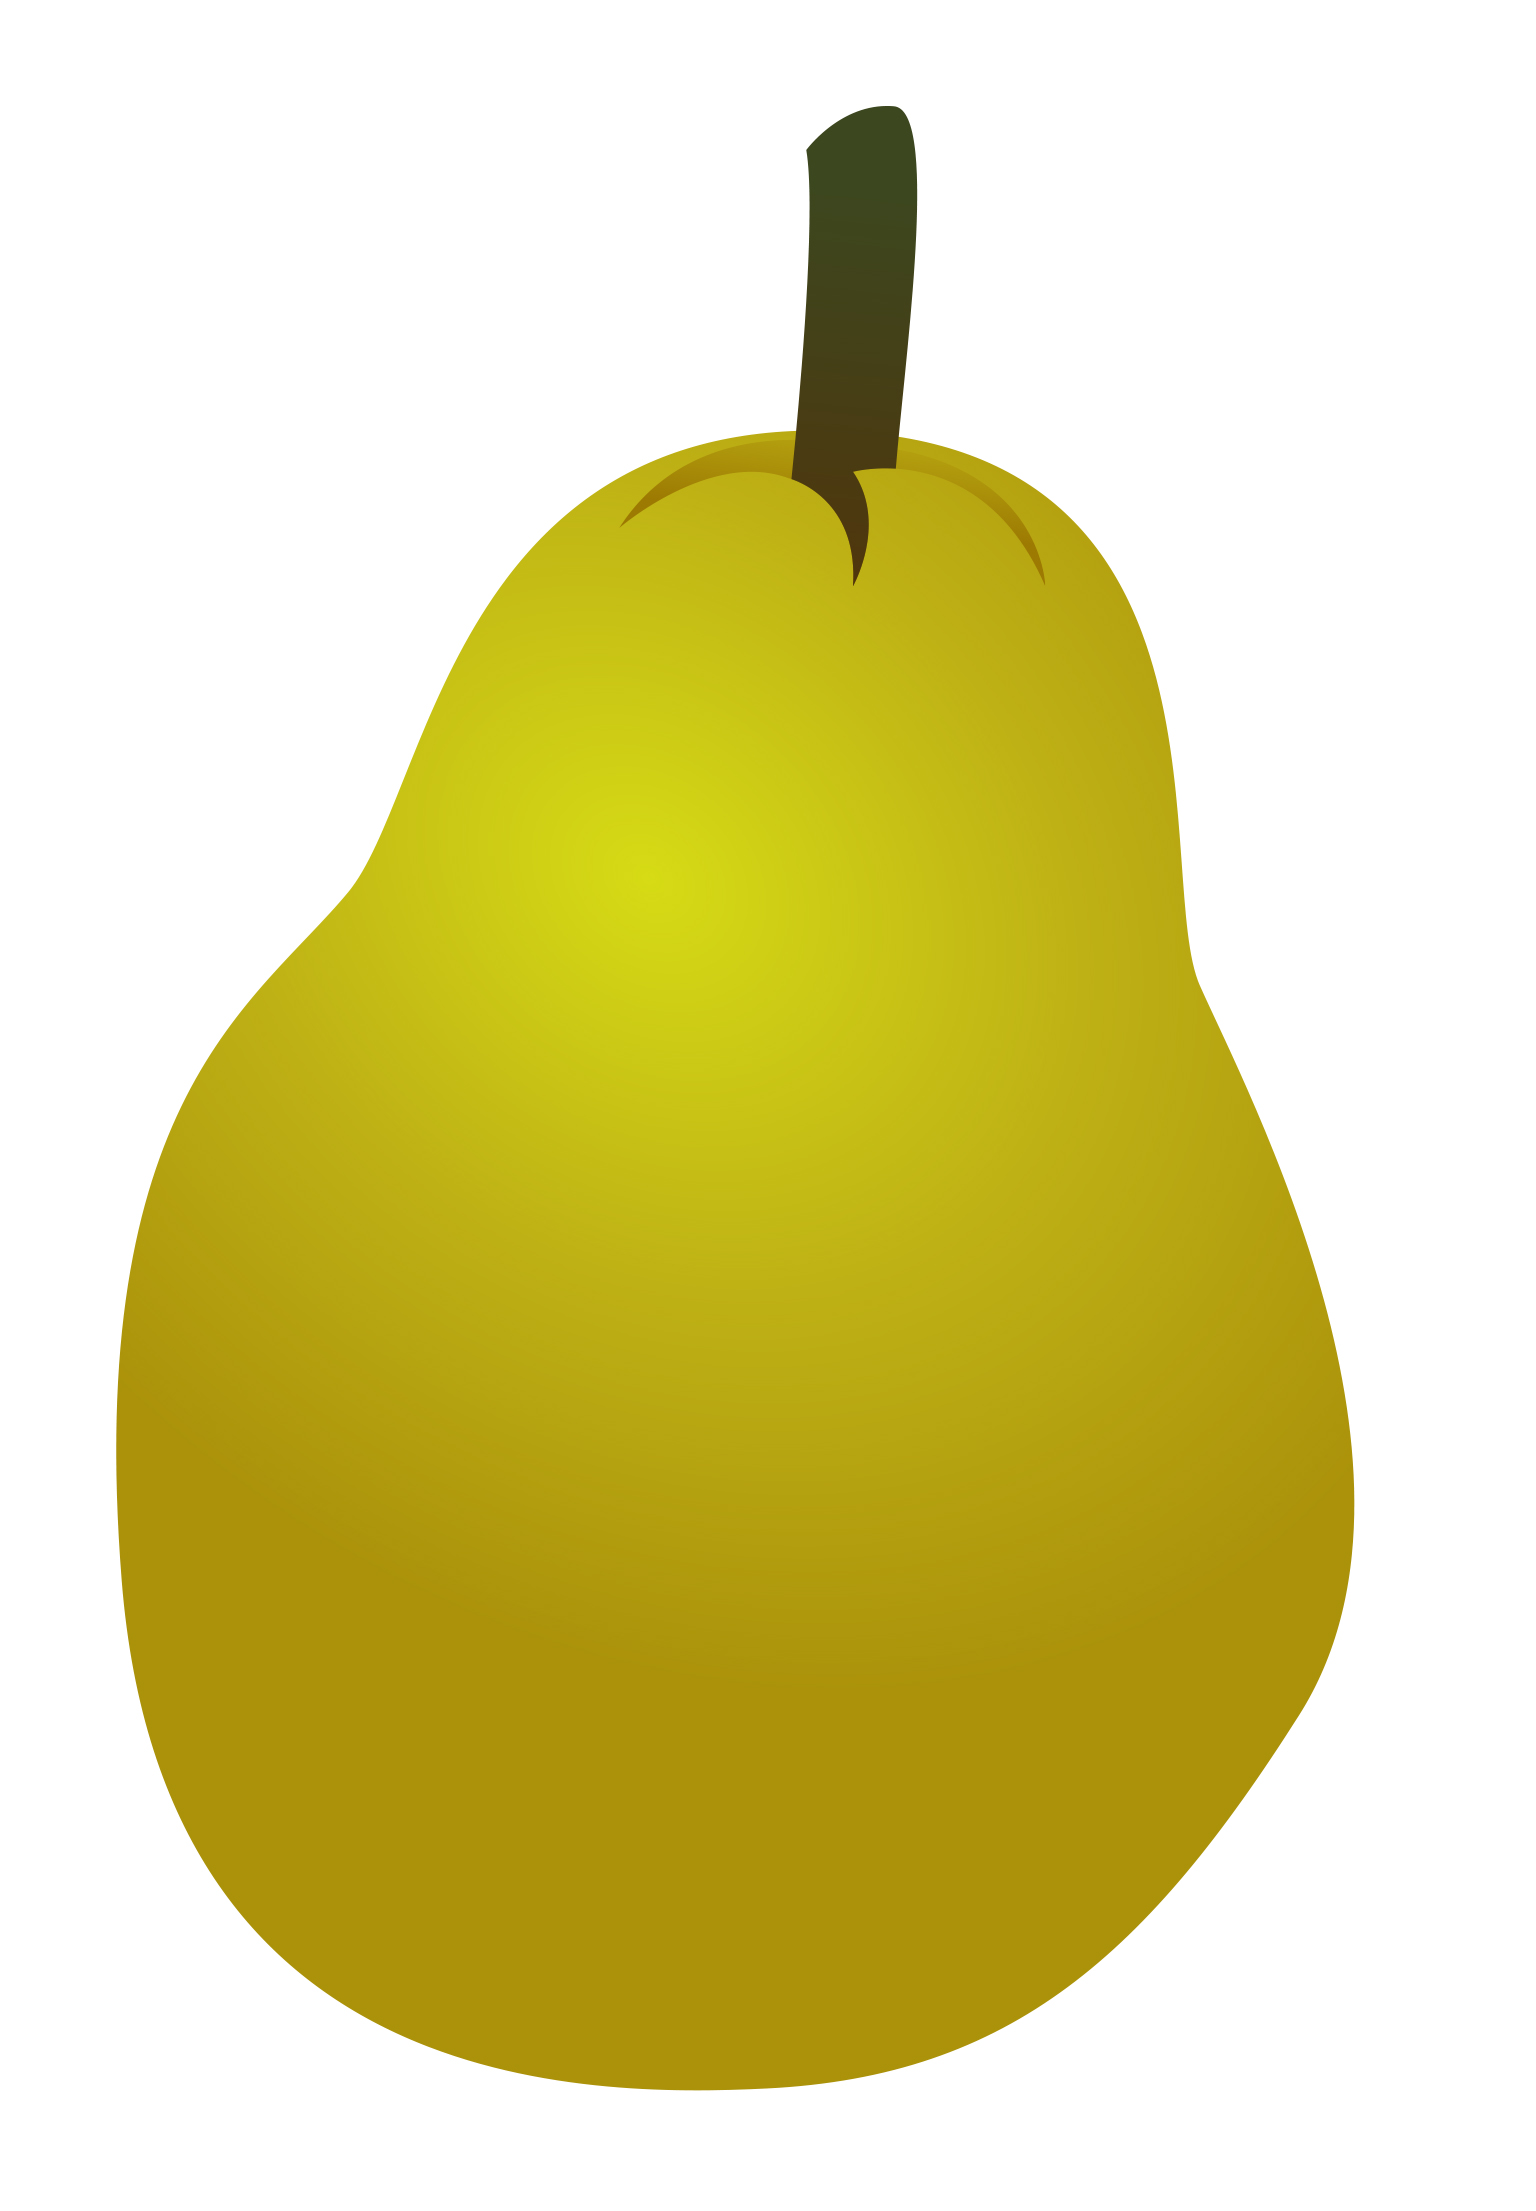 green pear clip art - photo #15